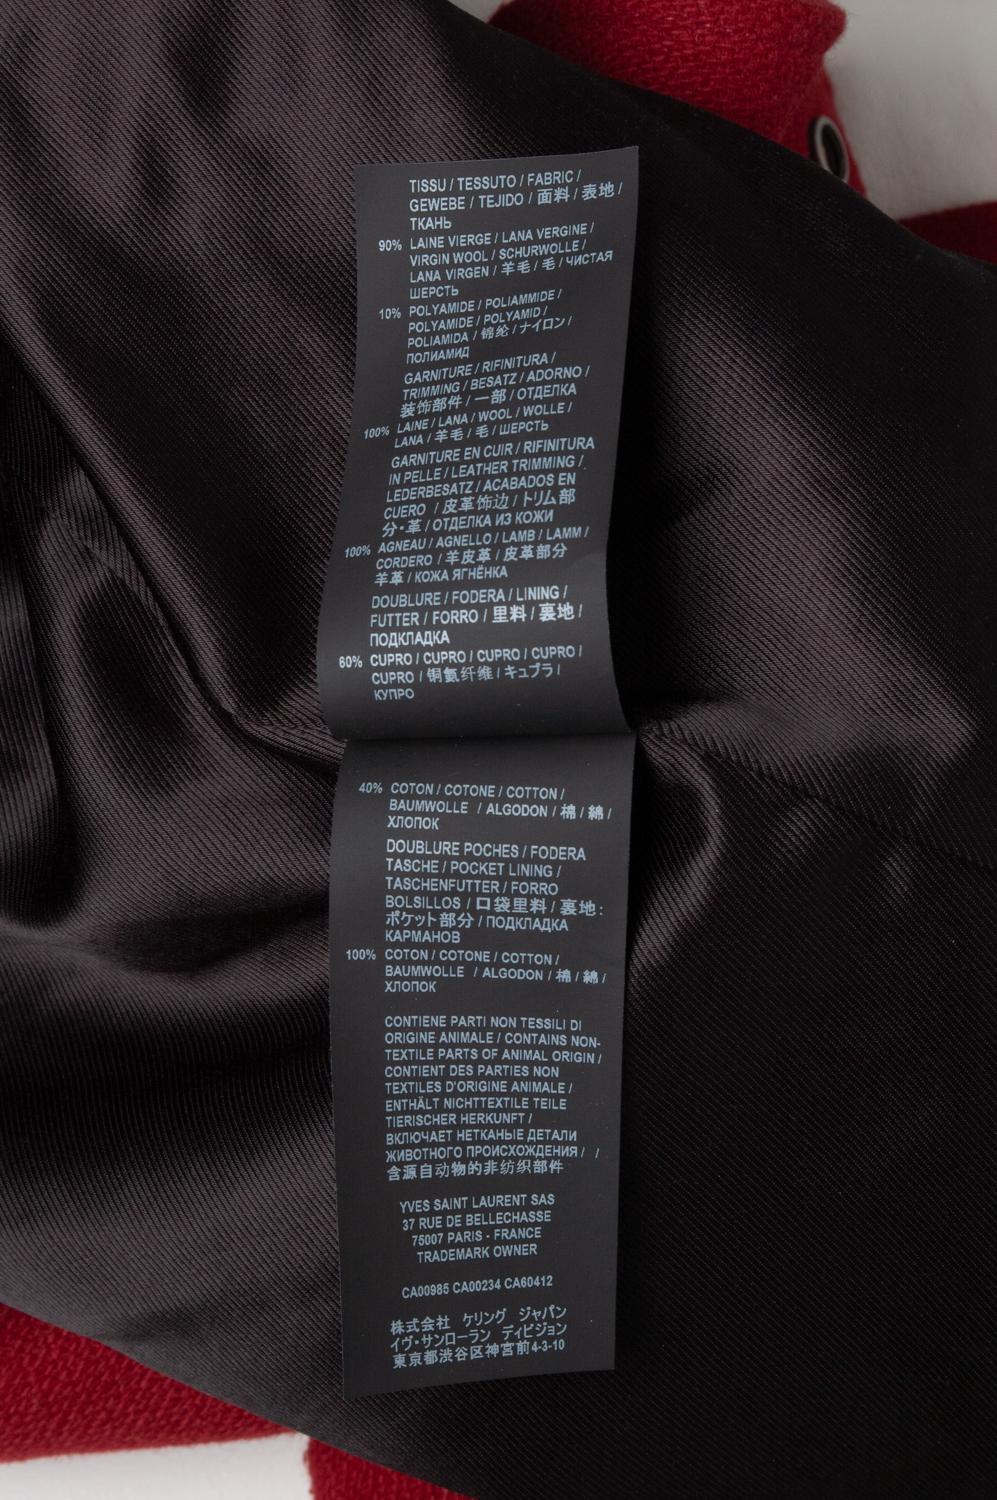  Saint Laurent Paris Men Jacket Teddy Bomber Size 44IT (Small) S609 For Sale 3